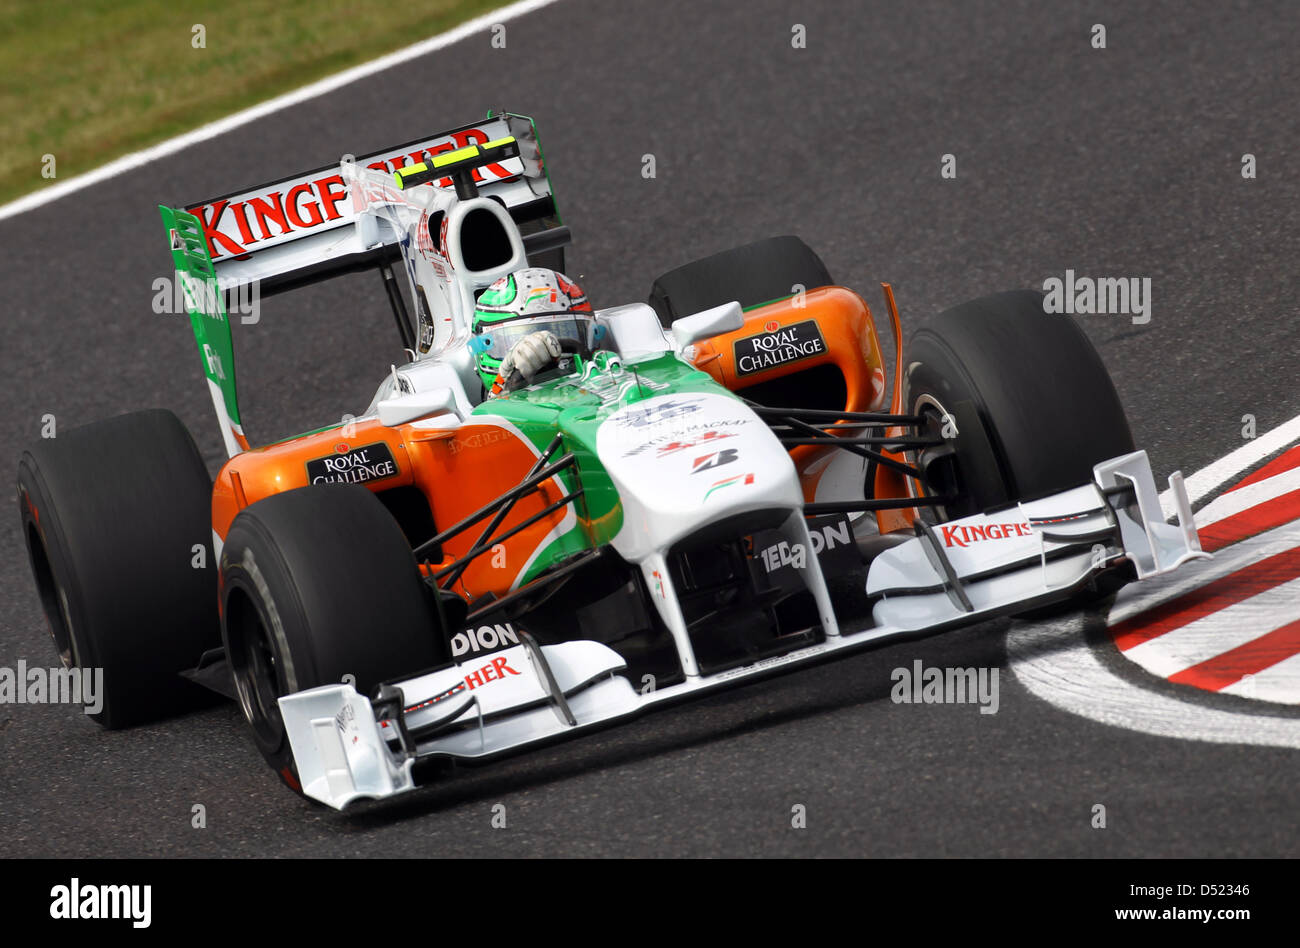 Italienische Fahrer Vitantonio Liuzzi für Force India ist auf der Rennstrecke vor dem Start des Grand Prix von Japan auf dem Suzuka Circuit in Suzuka, Japan, 8. Oktober 2010. Foto: Jens Büttner Stockfoto